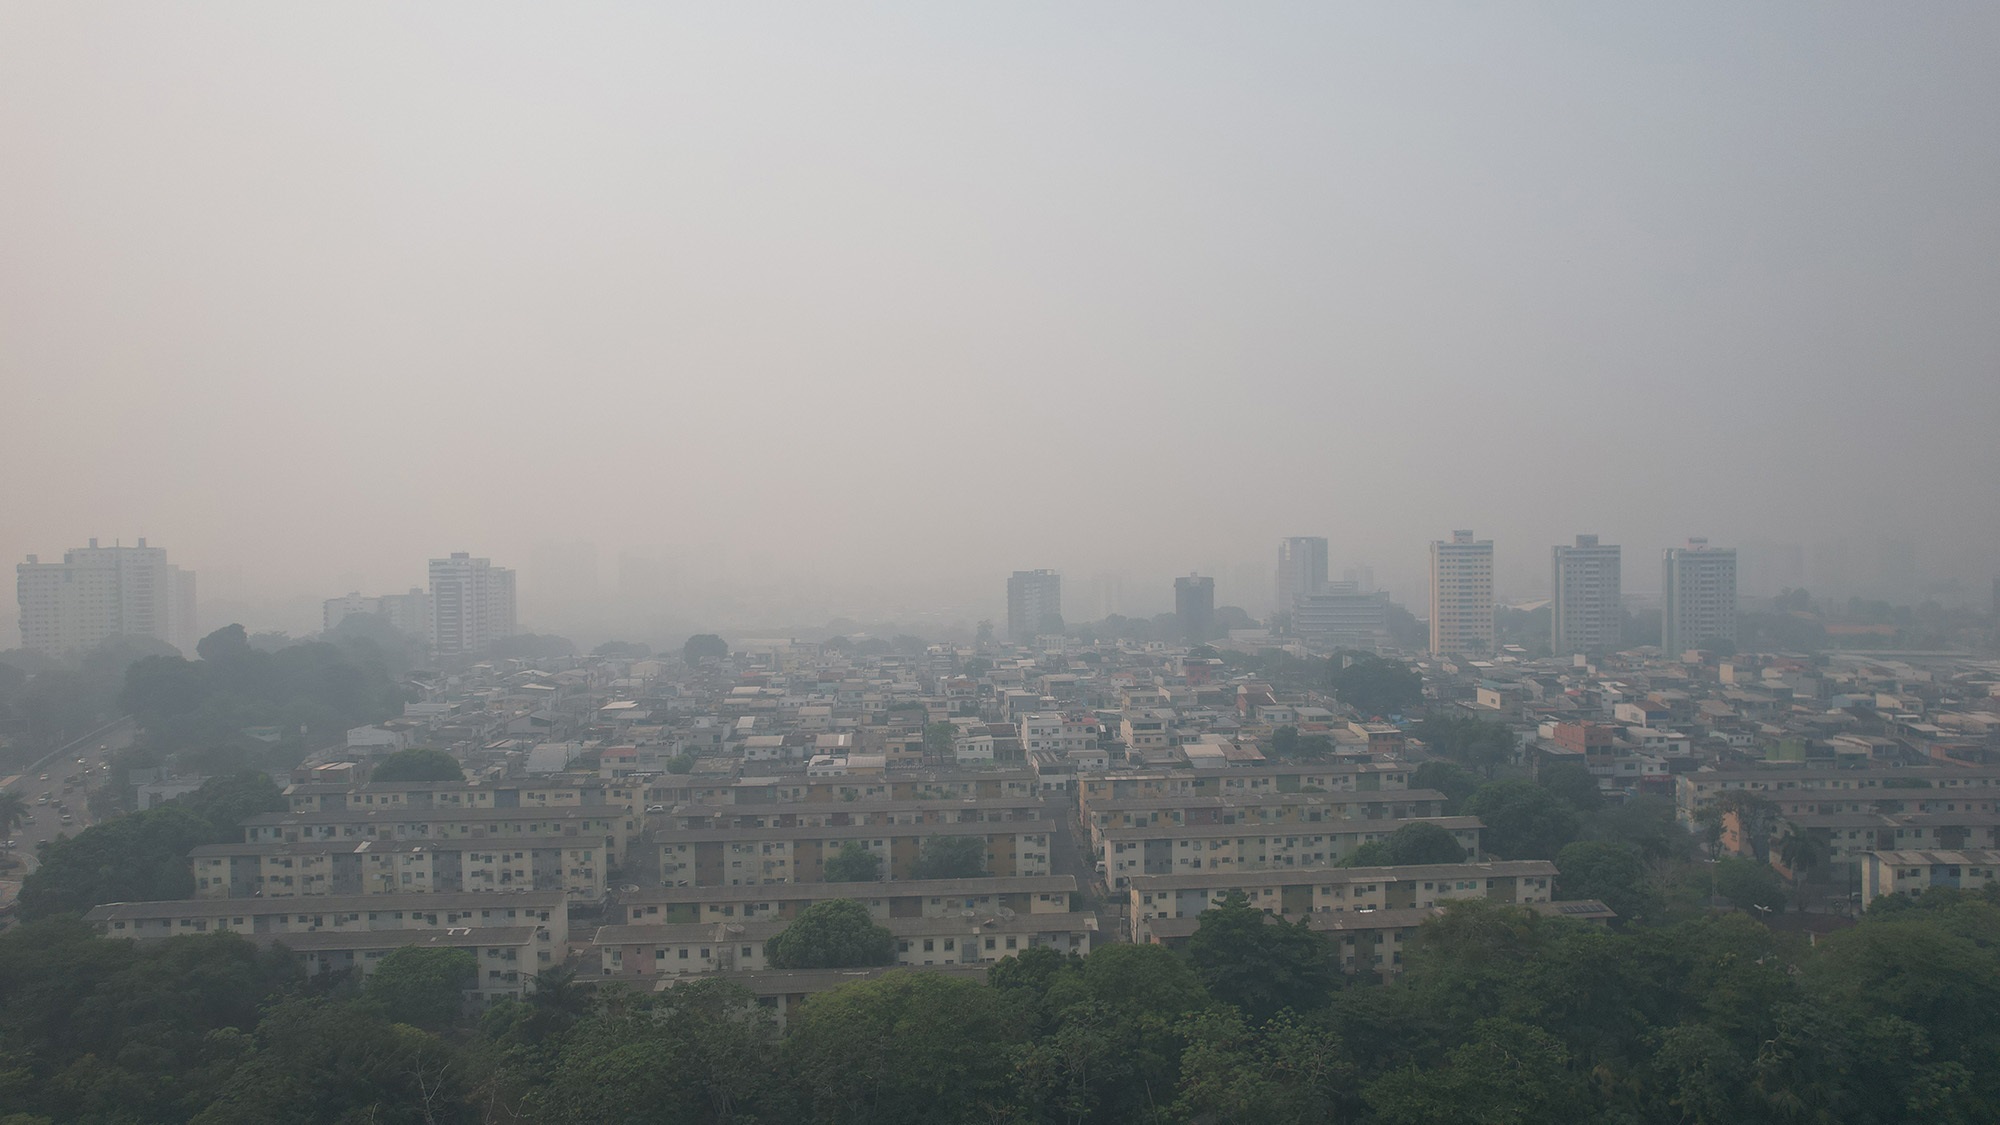 Fumaça que cobre Manaus é provocada por incêndios florestais perto da cidade. Em 11 de outubro, a cidade registrou alguns dos piores níveis de qualidade do ar no mundo. Foto Alberto César Araújo / Amazônia Real, CC BY-NC-ND